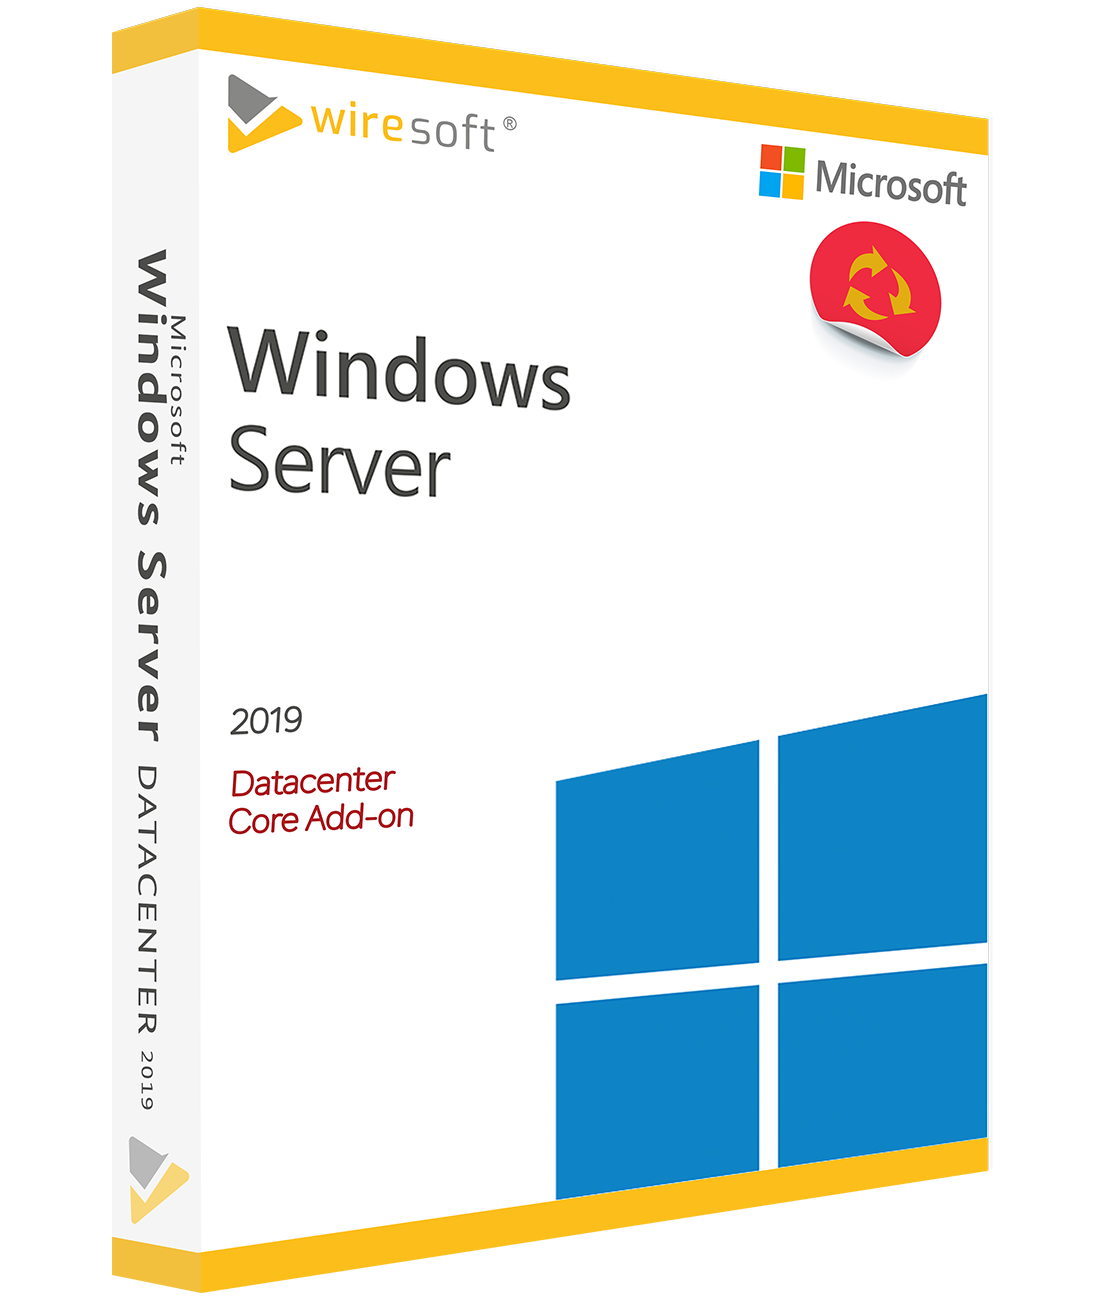 Windows Server 2019 Microsoft Windows Server Server Software Shop Wiresoft Compra De 3096